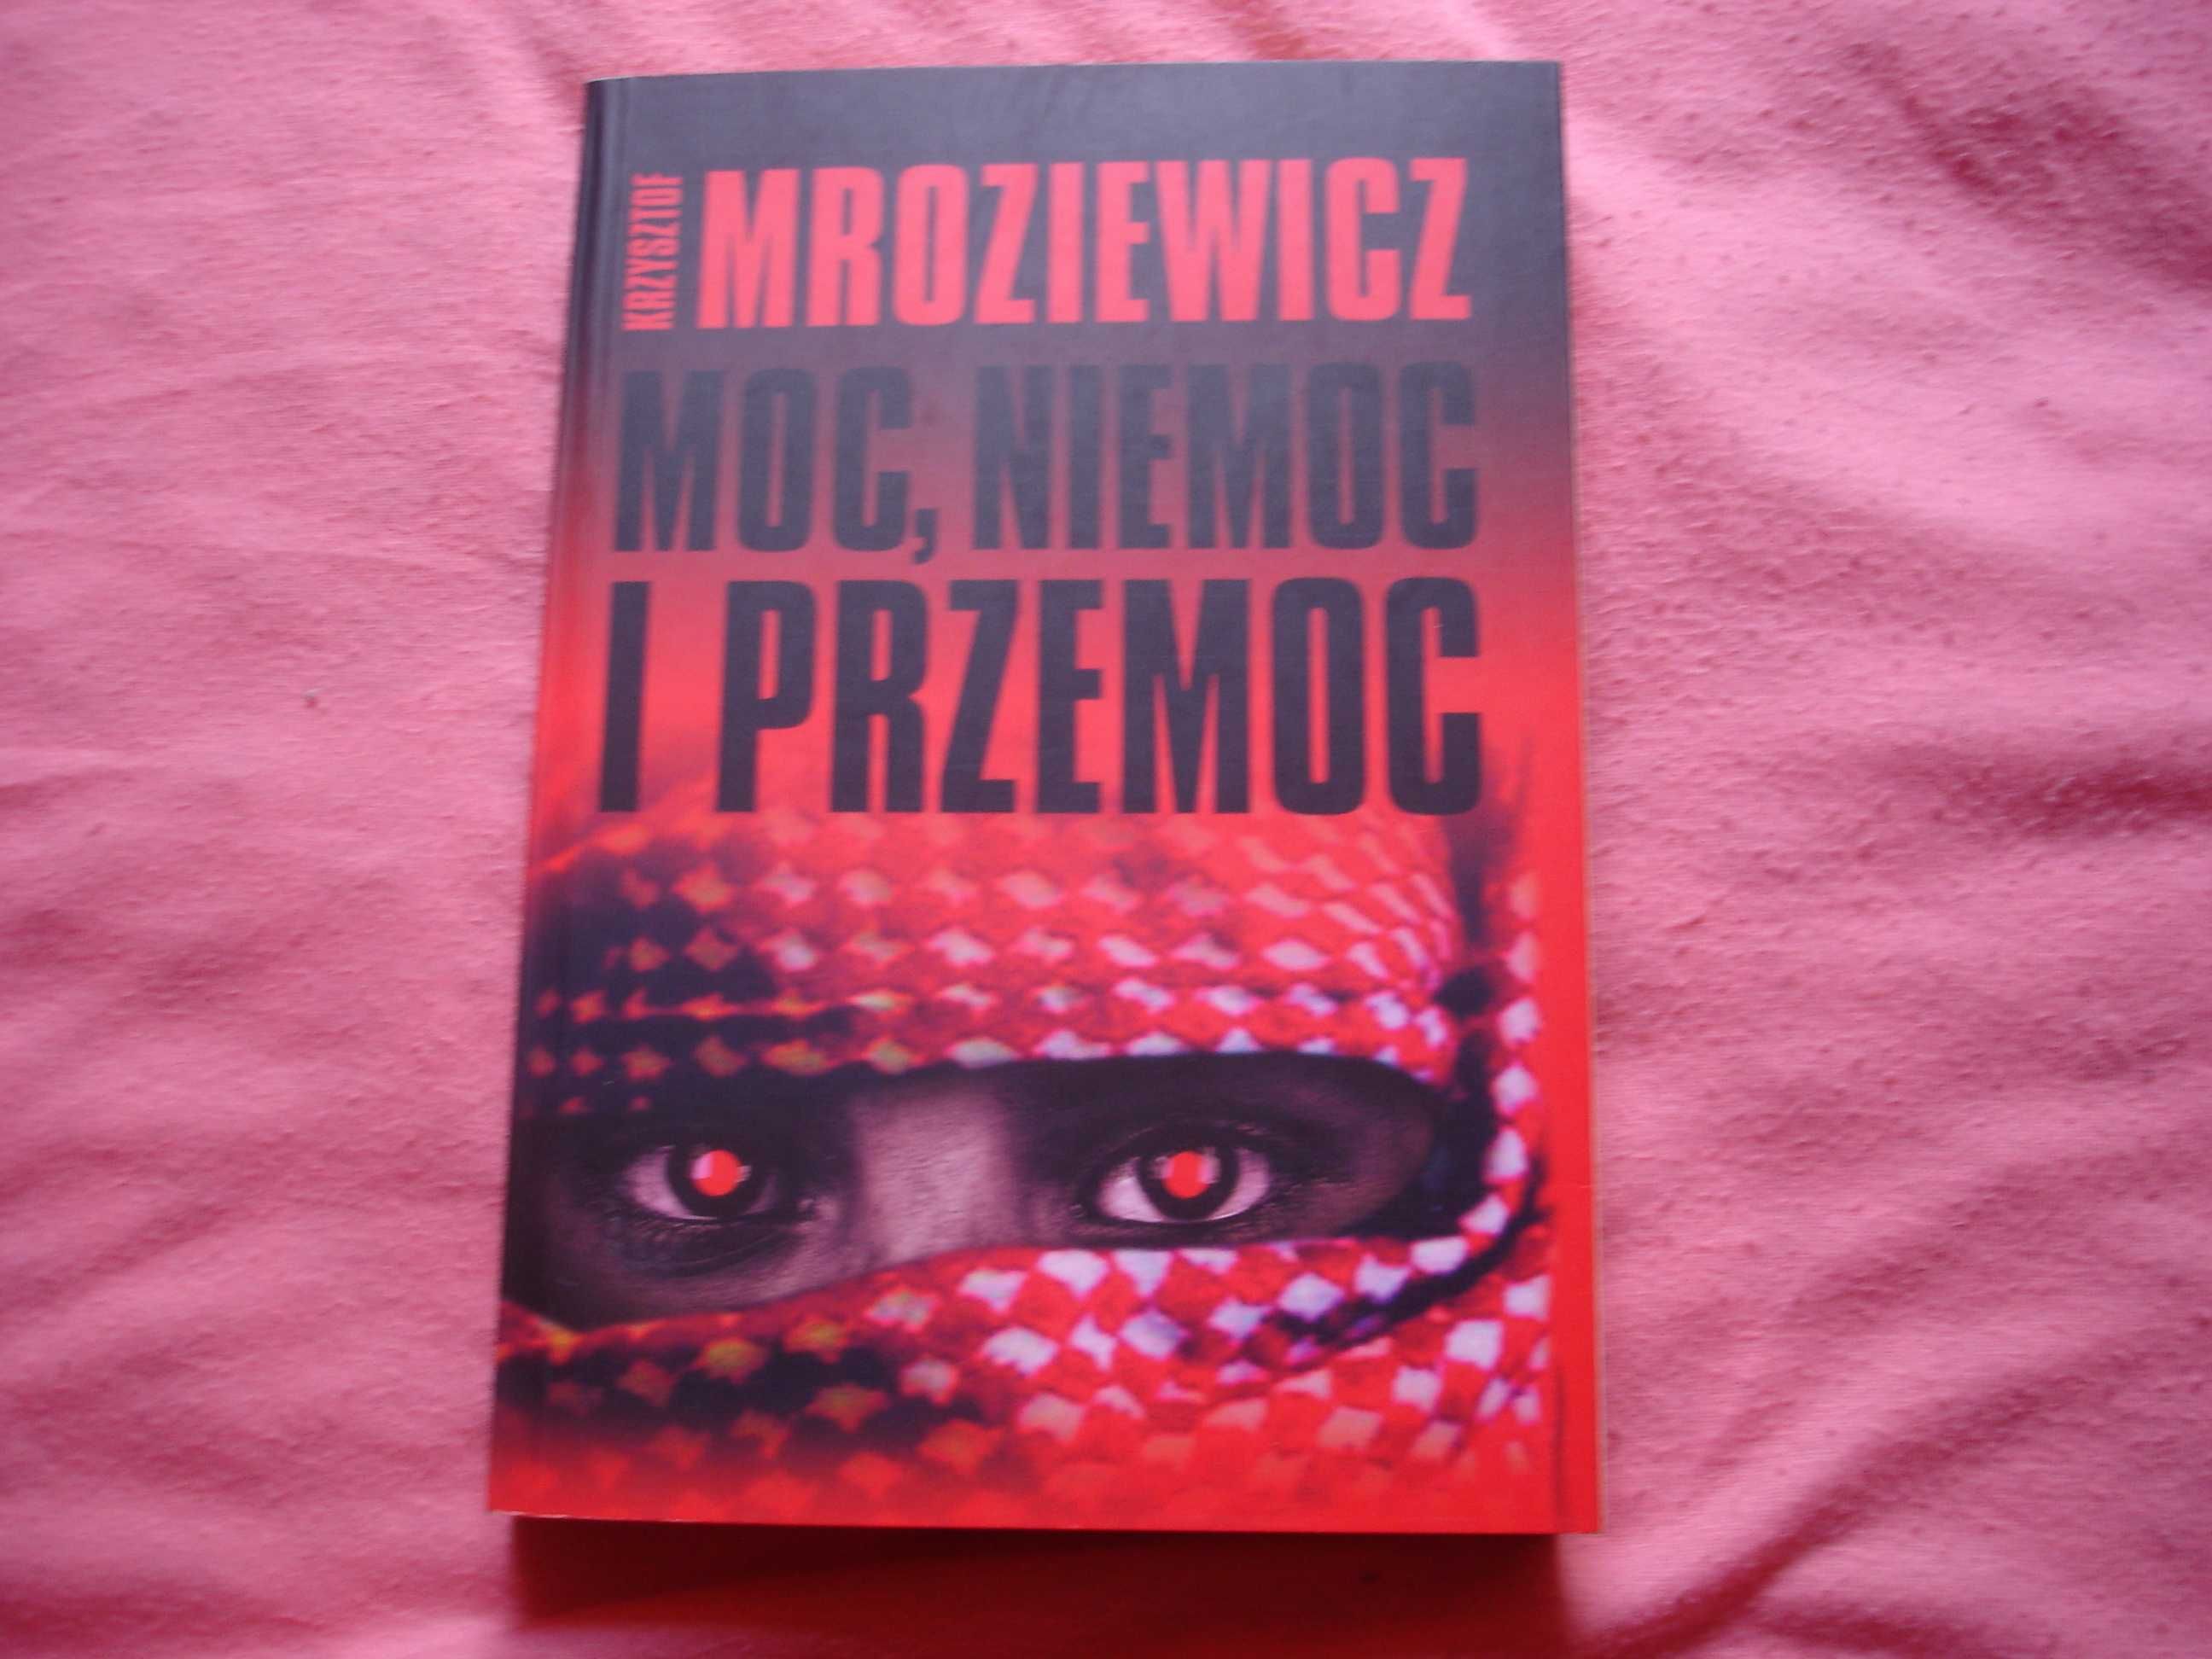 Moc, niemoc i przemoc - Krzysztof Mroziewicz